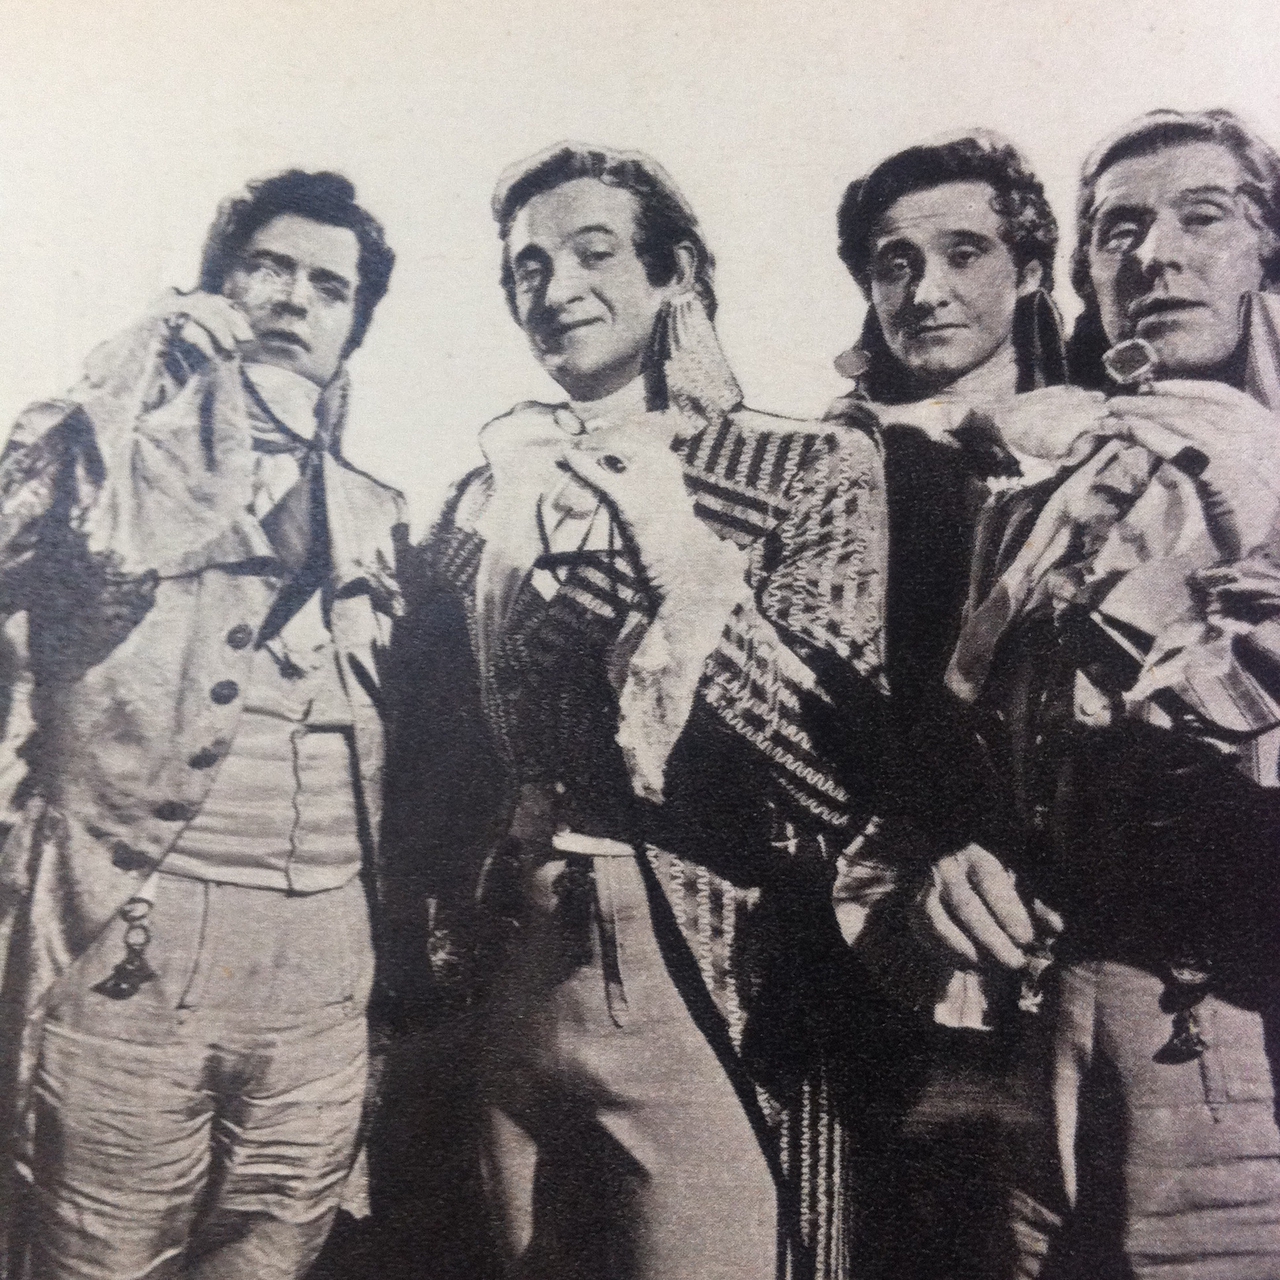 دیوید نیون در صحنه فیلم سینمایی The Fighting Pimpernel به همراه Robert Coote، Jack Hawkins و Patrick Macnee